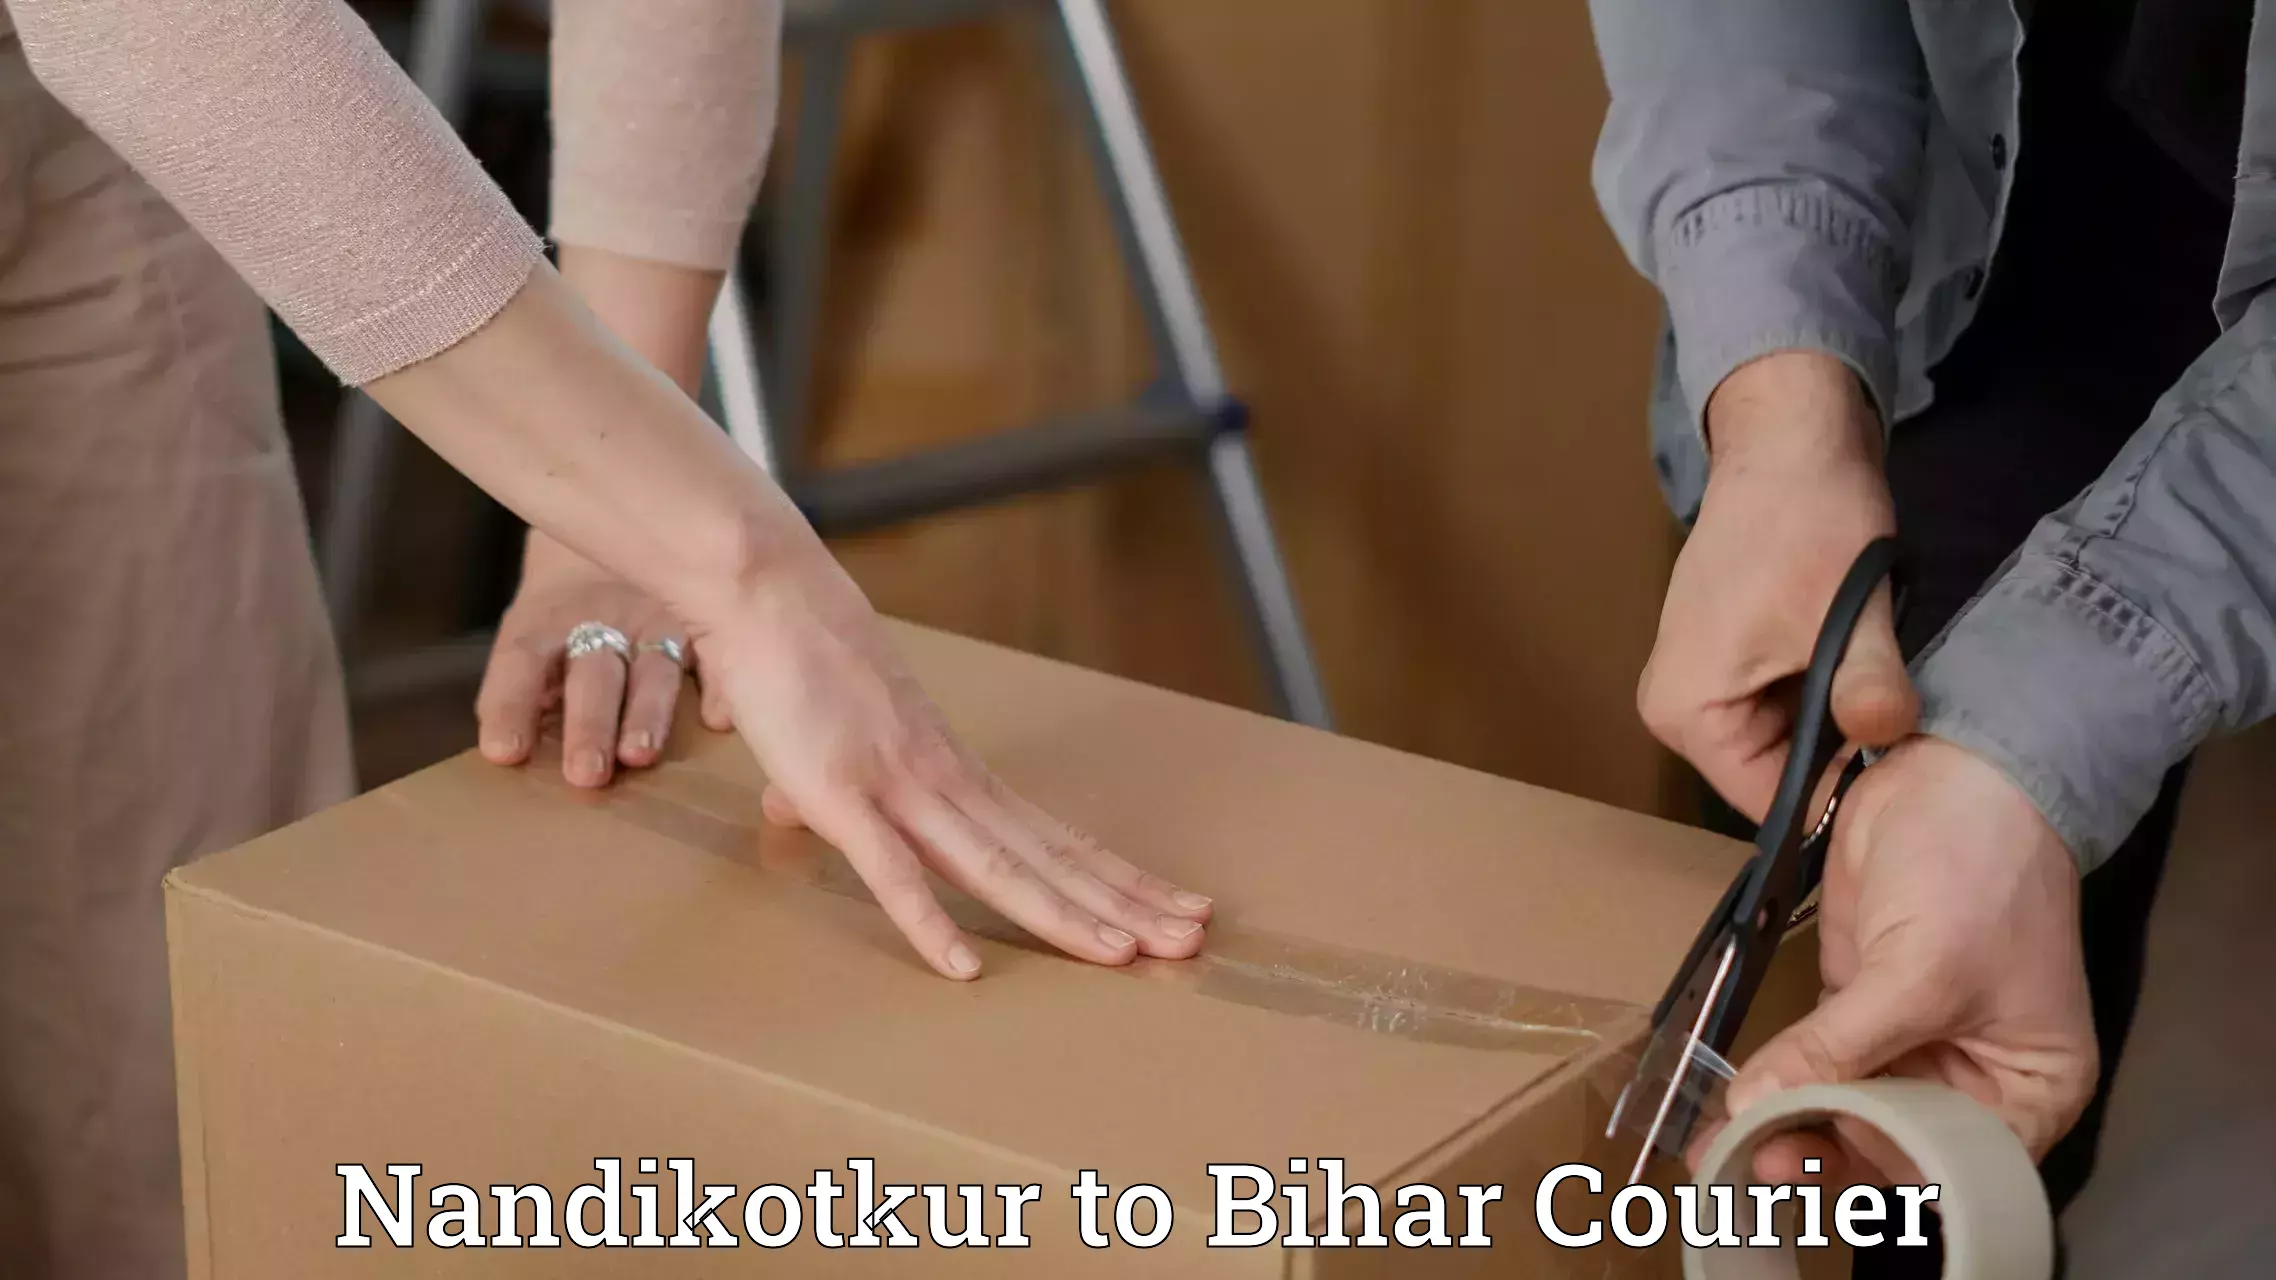 Full-service courier options Nandikotkur to Bihar